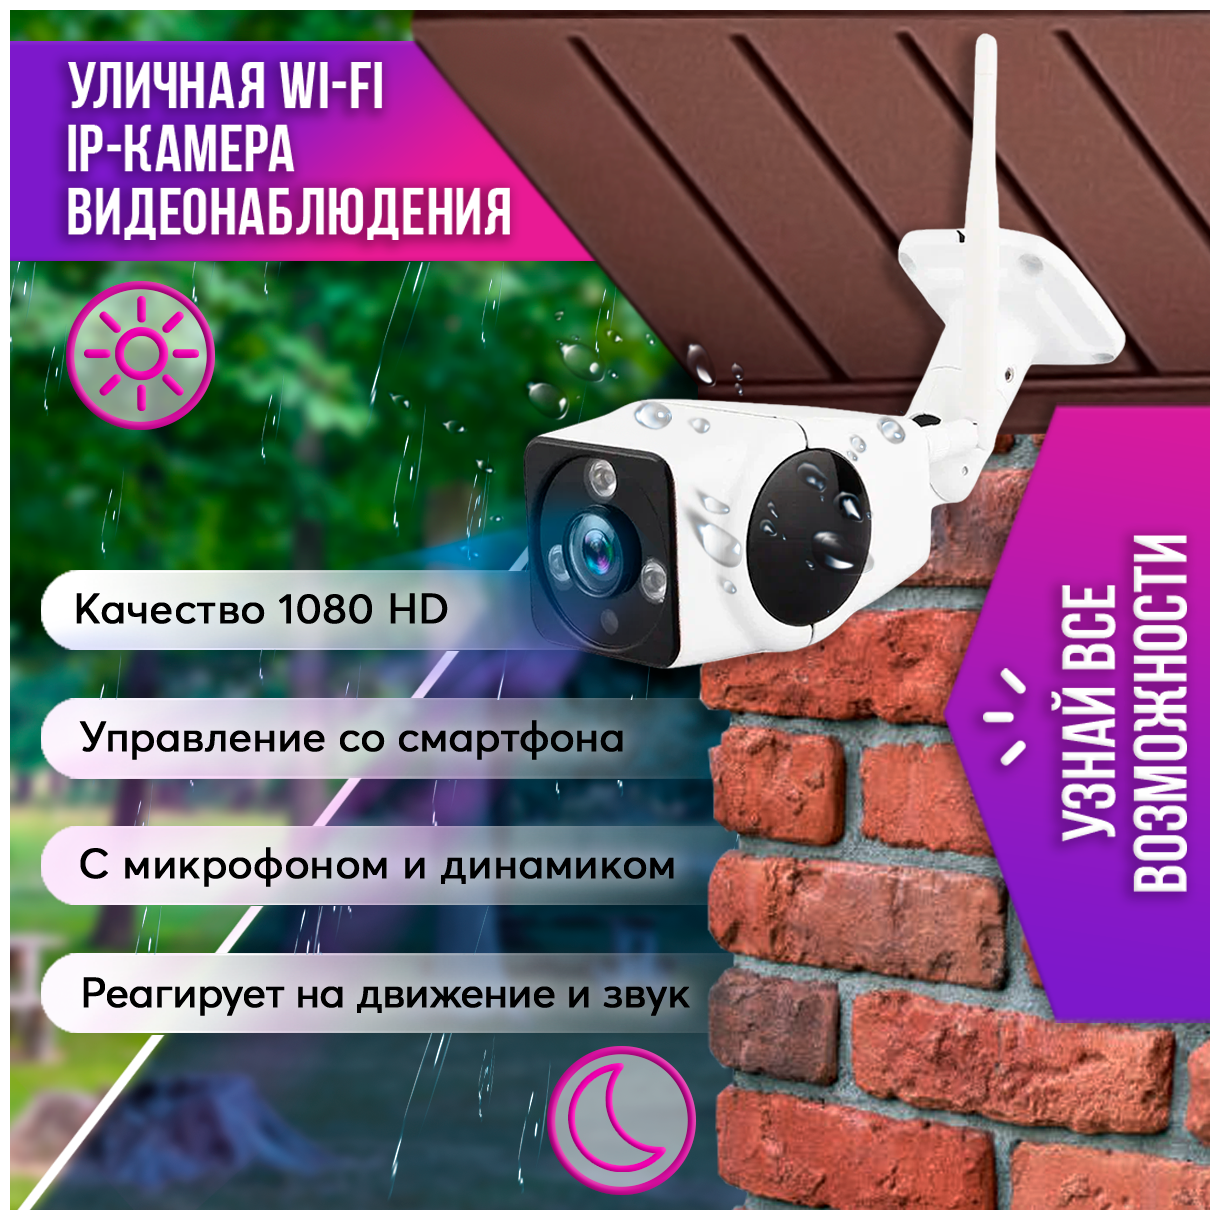 Видеоняня wifi, видеоняня беспроводная YAS-V18 HD 1080p, ip камера видеонаблюдения, видео няня, вращение 360p под управлением iOS, Android - фотография № 1